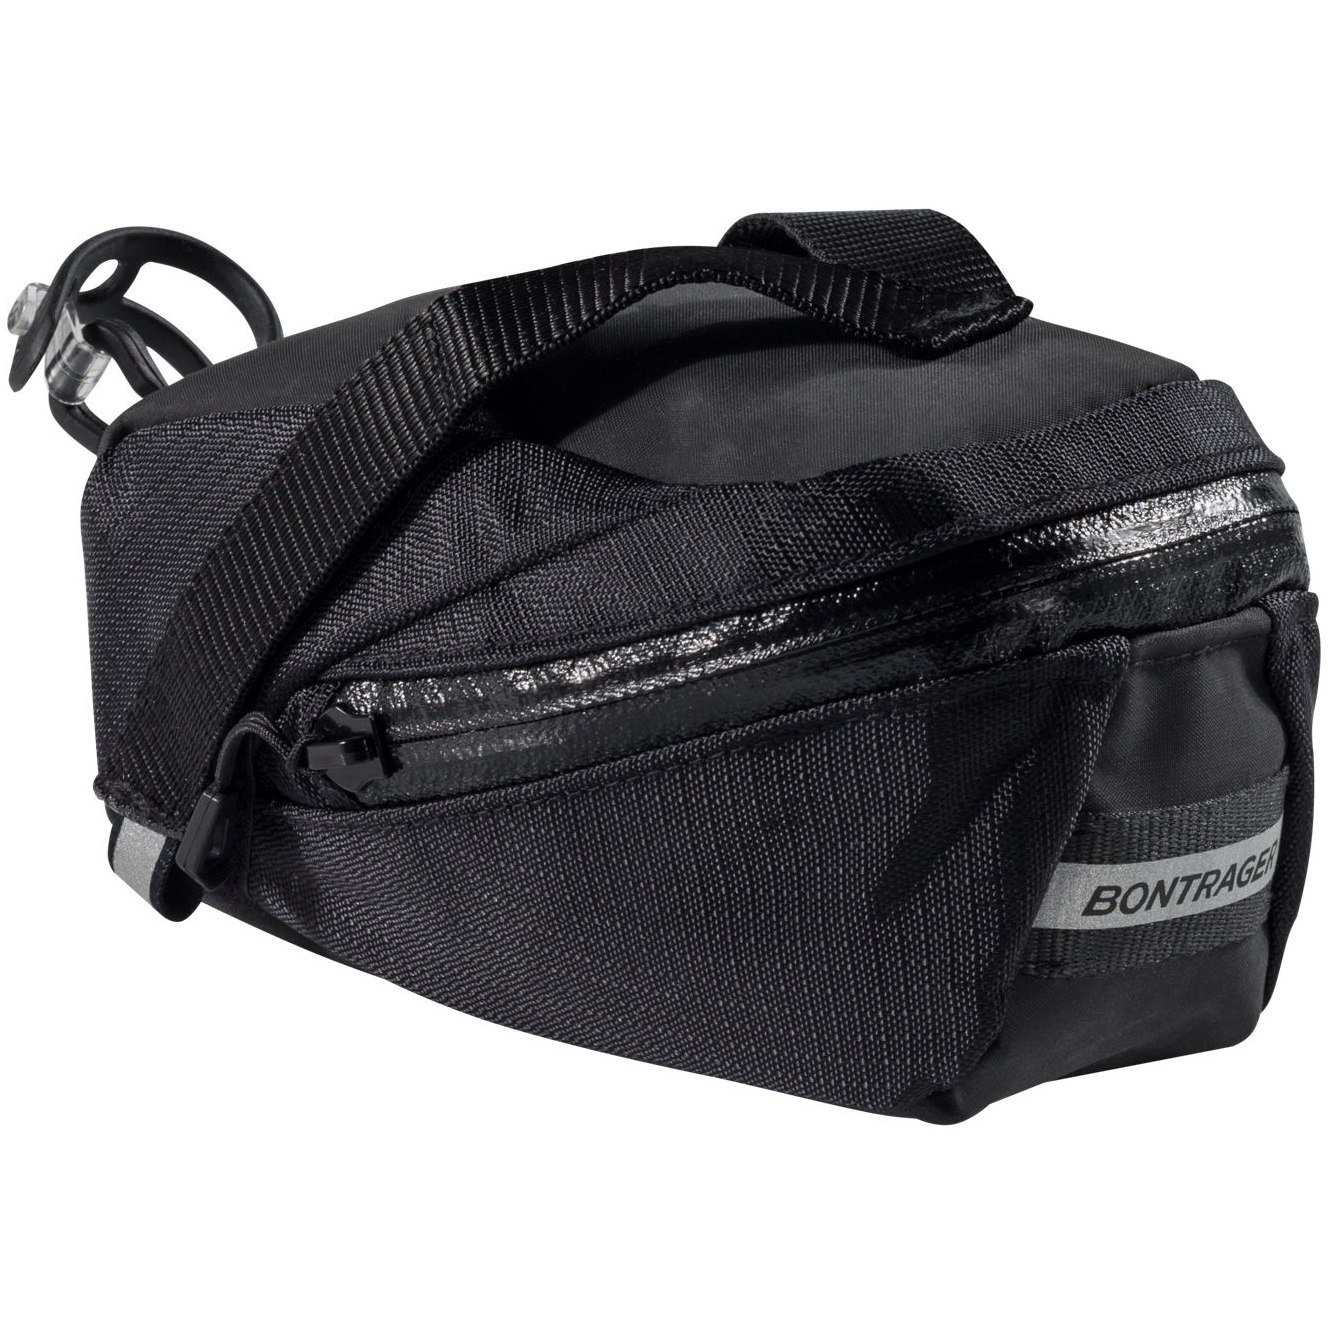 Produktbild von Bontrager Elite Medium Seat Pack Satteltasche - black